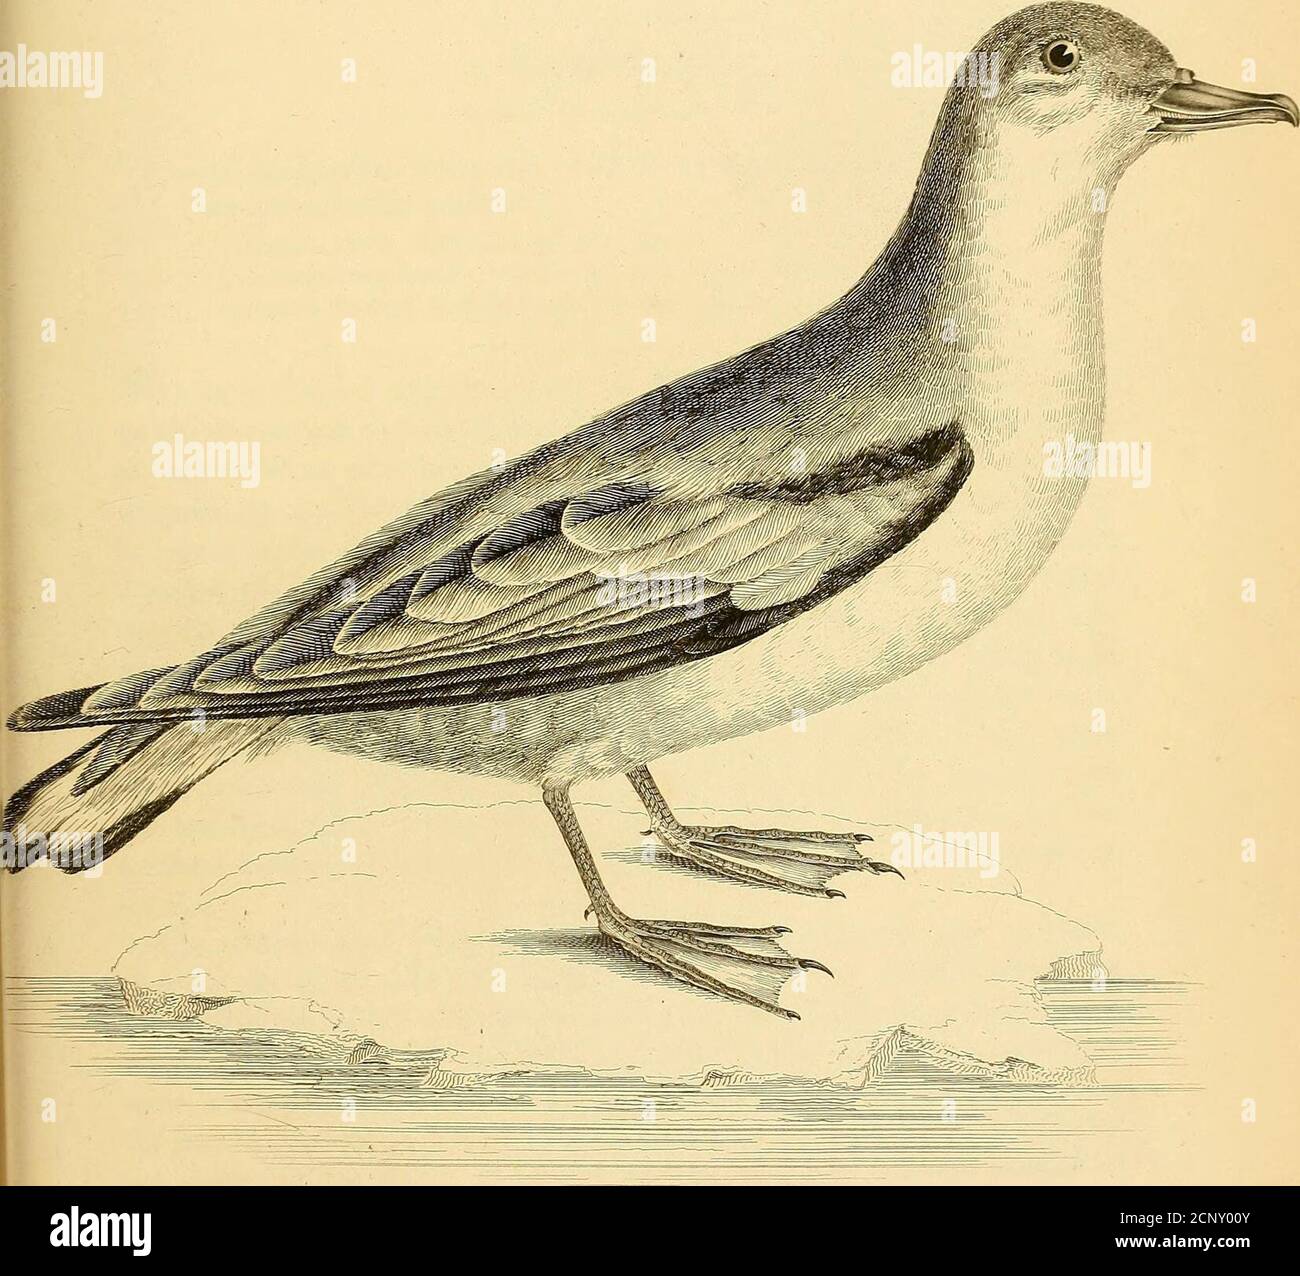 . Illustrations d'ornithologie . -:%■/&lt;■// ■/ // // //f/ ^A/.j/s ?/ . 4-1.. //&gt;■/&gt; /// A //?/ t^%&gt; }.j/r/ ■ PACHYPTILA FORSTERI, Stephens.Forster s Prion. PLAQUE XLVII. P. coerulescente-grisea, subtus alba, remigibus rectricumque apicibus nigris, rectrici-bus duobus medis longissimis. Procellaria vittata, Gmel. Linn. vol. ii. P. 560. Procellaria forsteri, Lath. Vol. iii. P. 827- Pachyptila forsteri, Steph. In Shaws. Gen. Zool. vol. xiii. P. 251, W e ont figuré et décrit cet oiseau à partir d'un spécimen prêté à usby the Zoological Society of London, sous le titre ci-dessus, W Banque D'Images